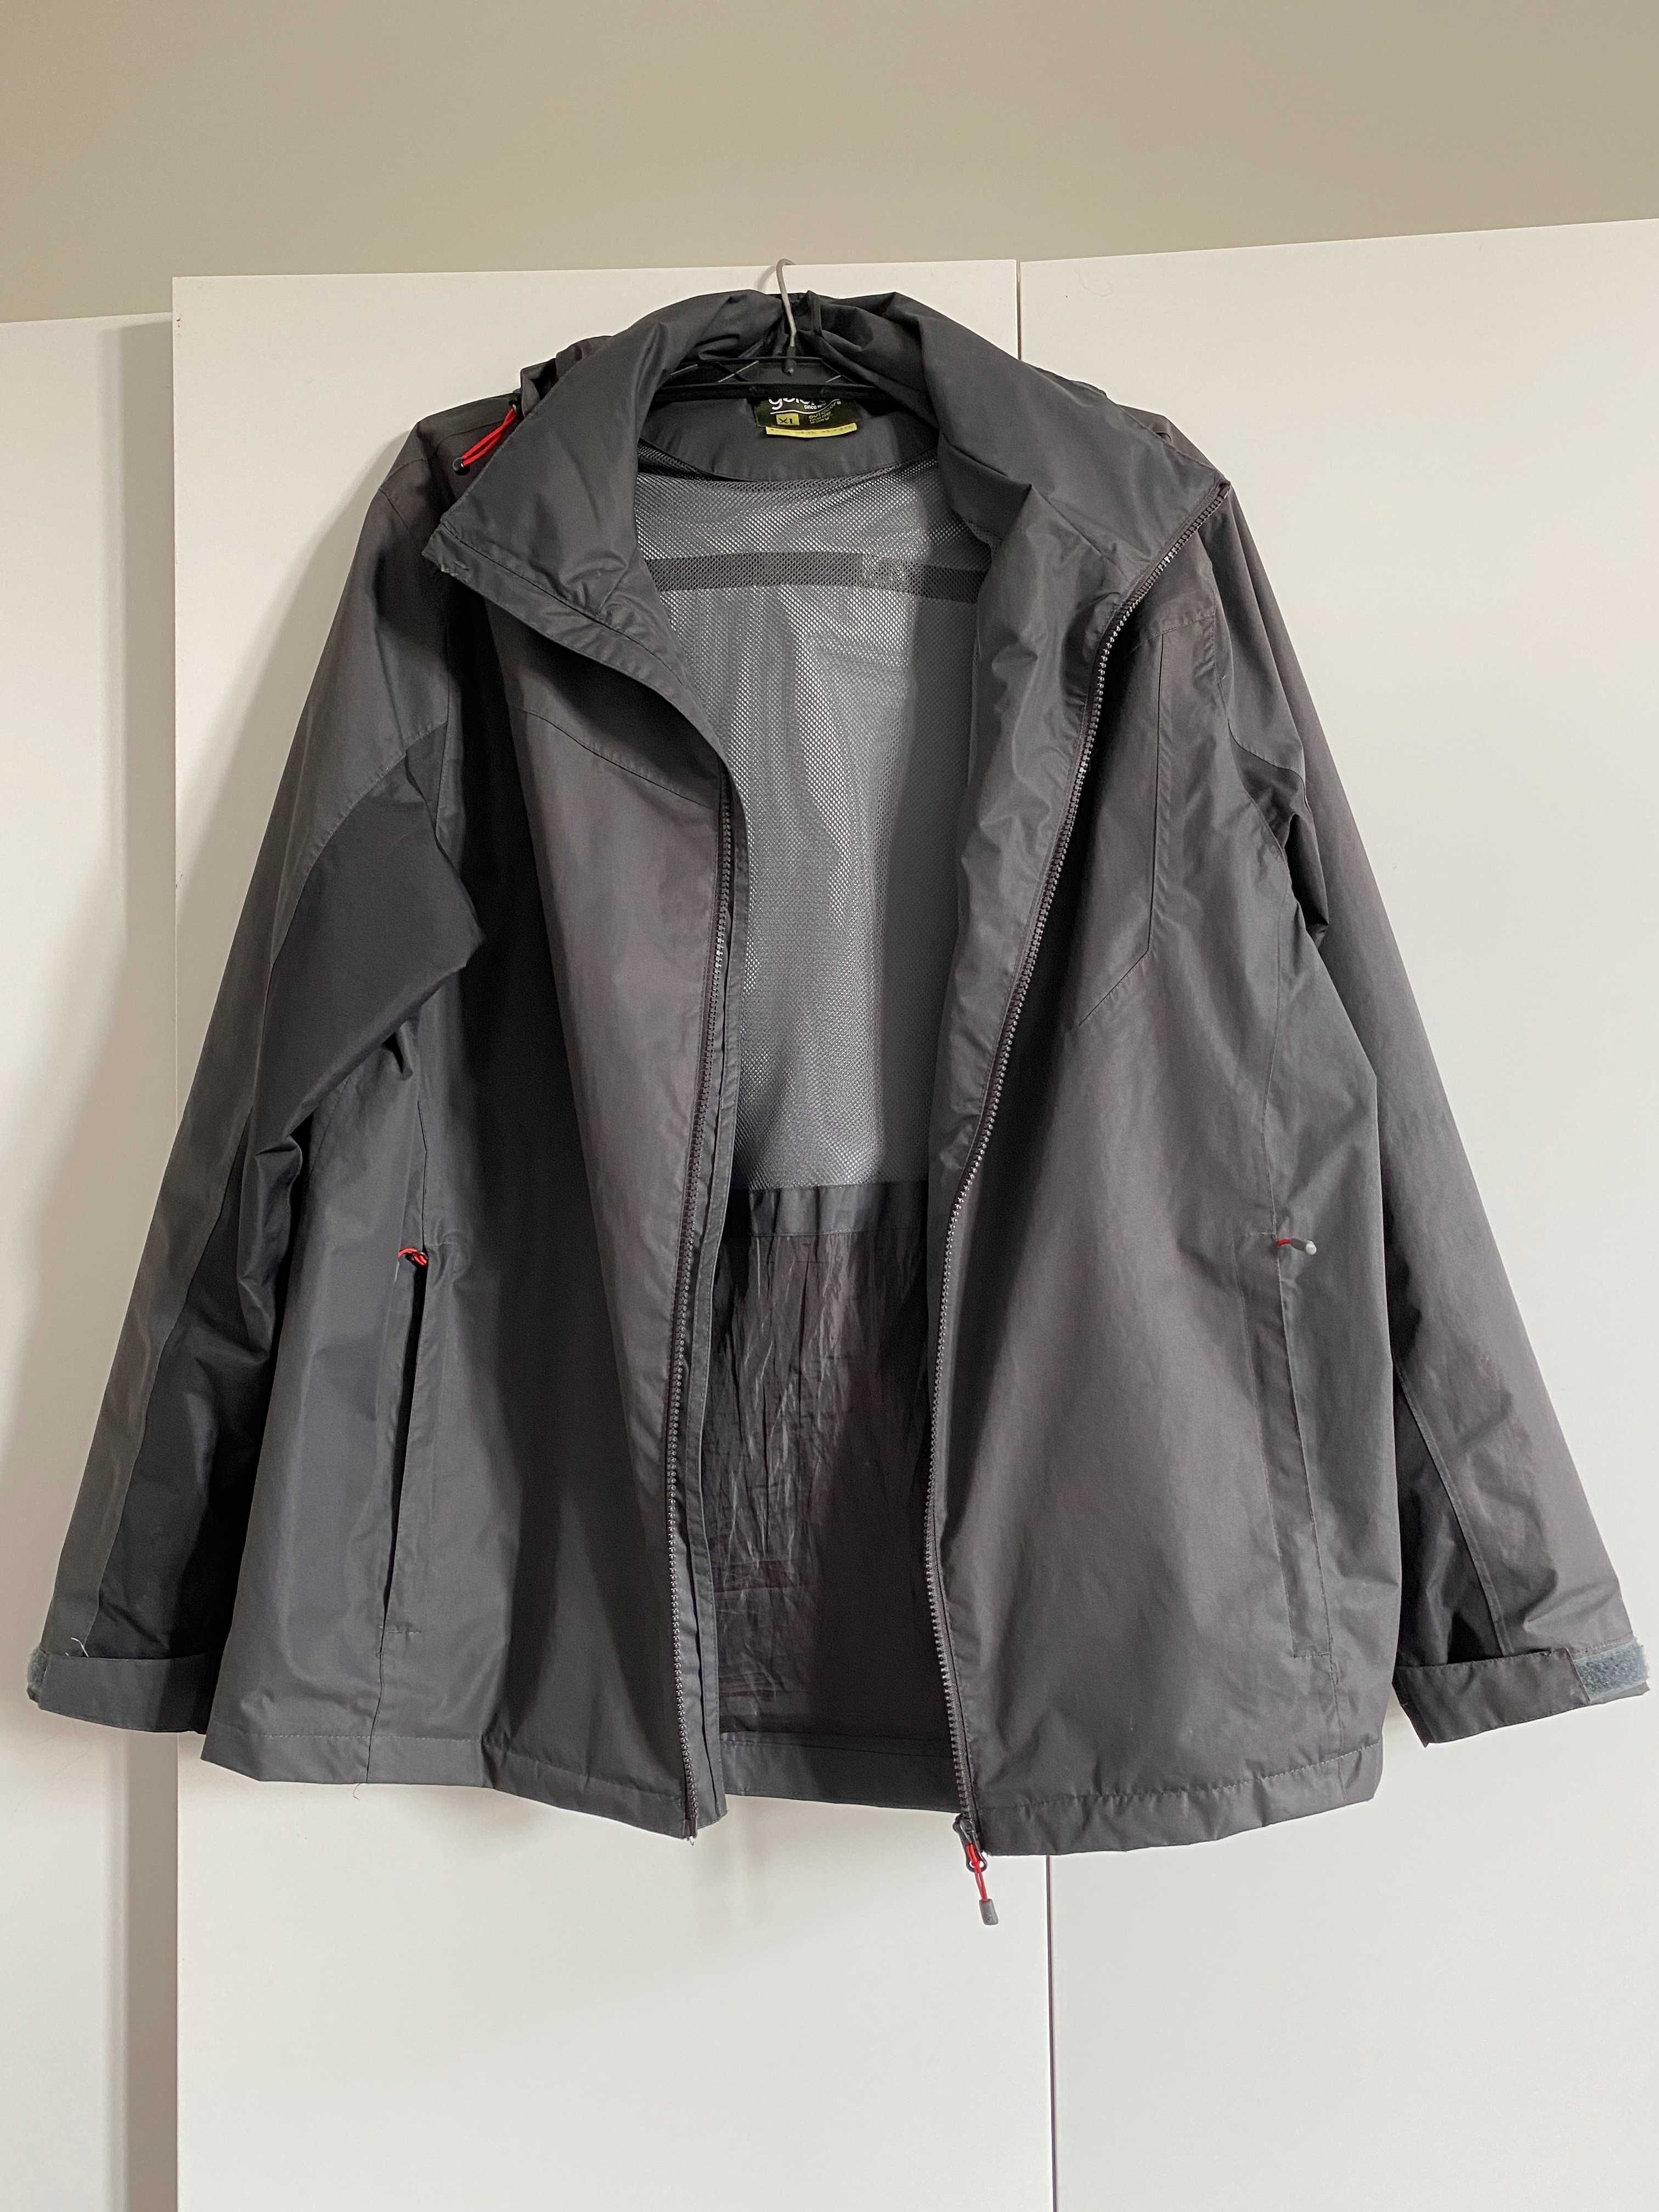 Gelert męska kurtka wodoodporna płaszcz oddychająca wiosenna XL